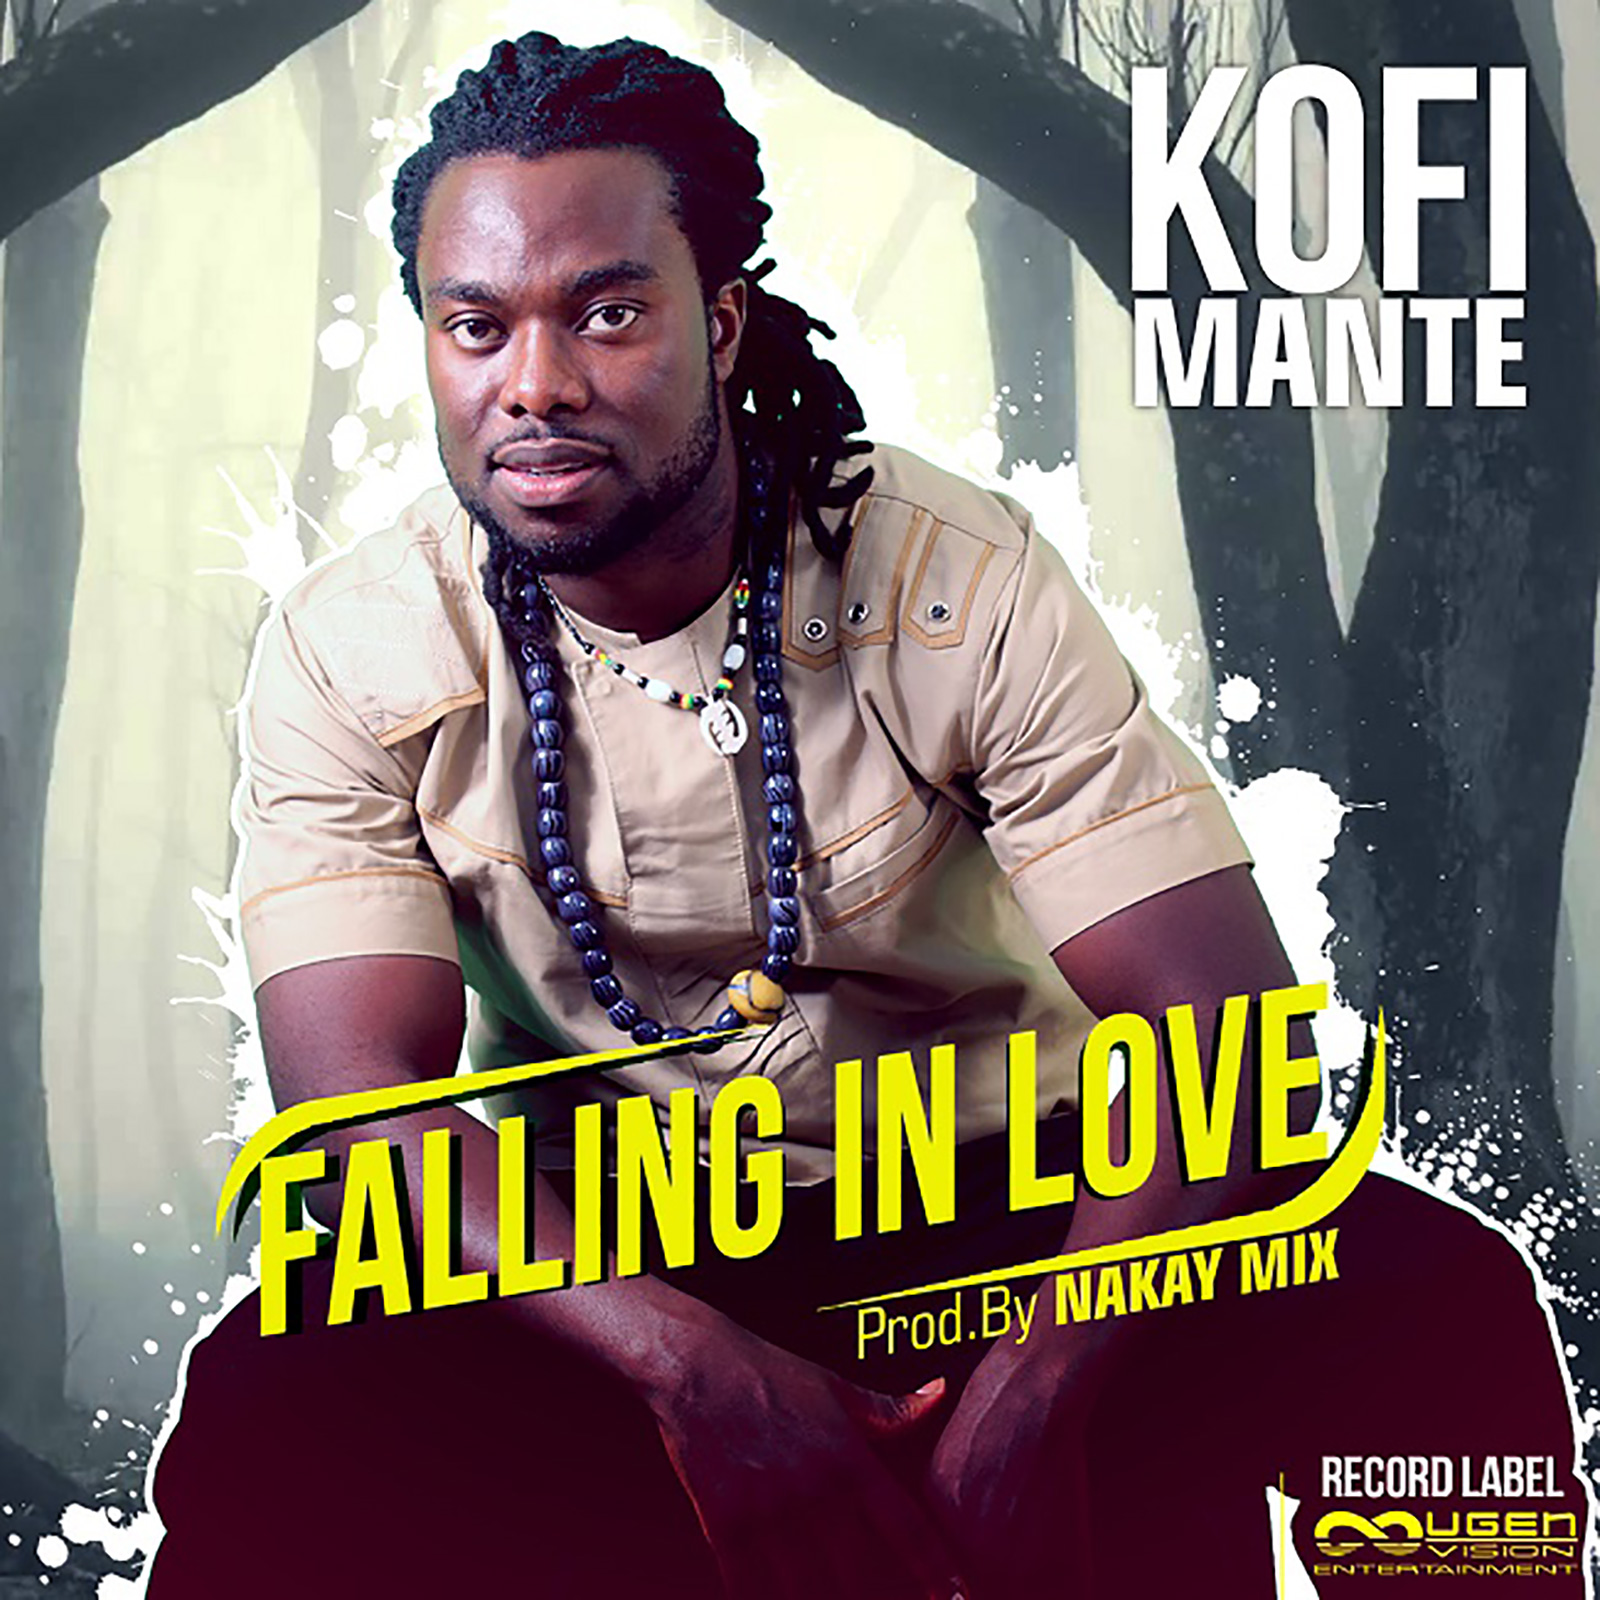 Falling In Love by Kofi Mante